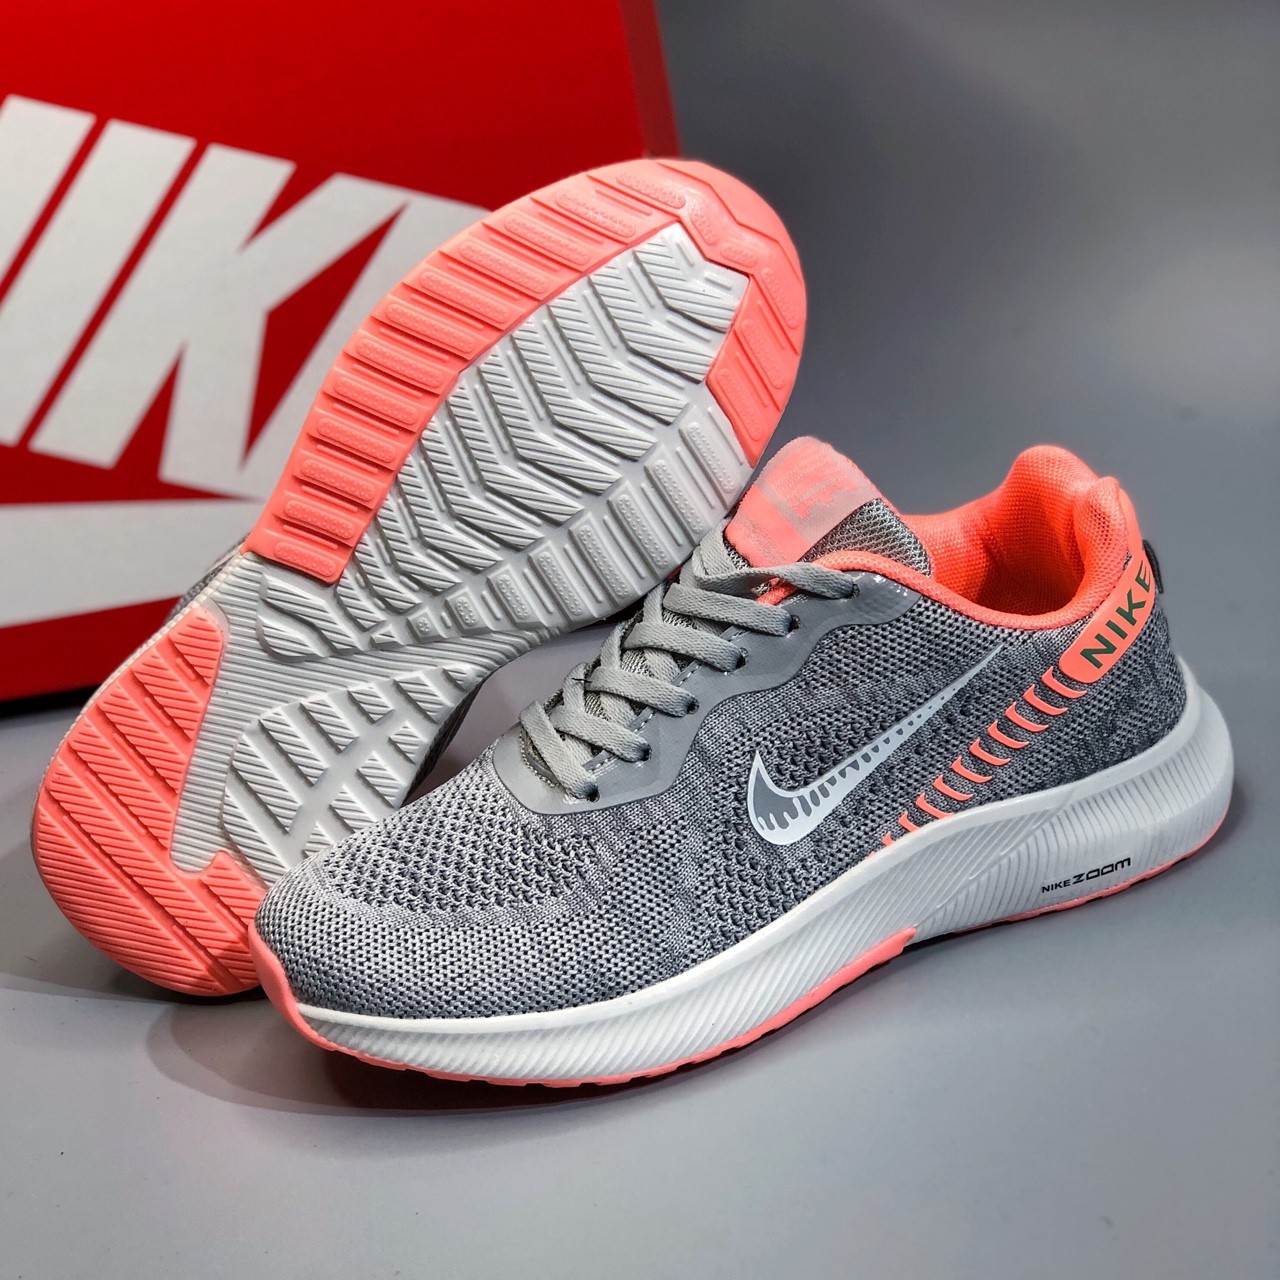 Giày Nike Zoom V201 Nữ